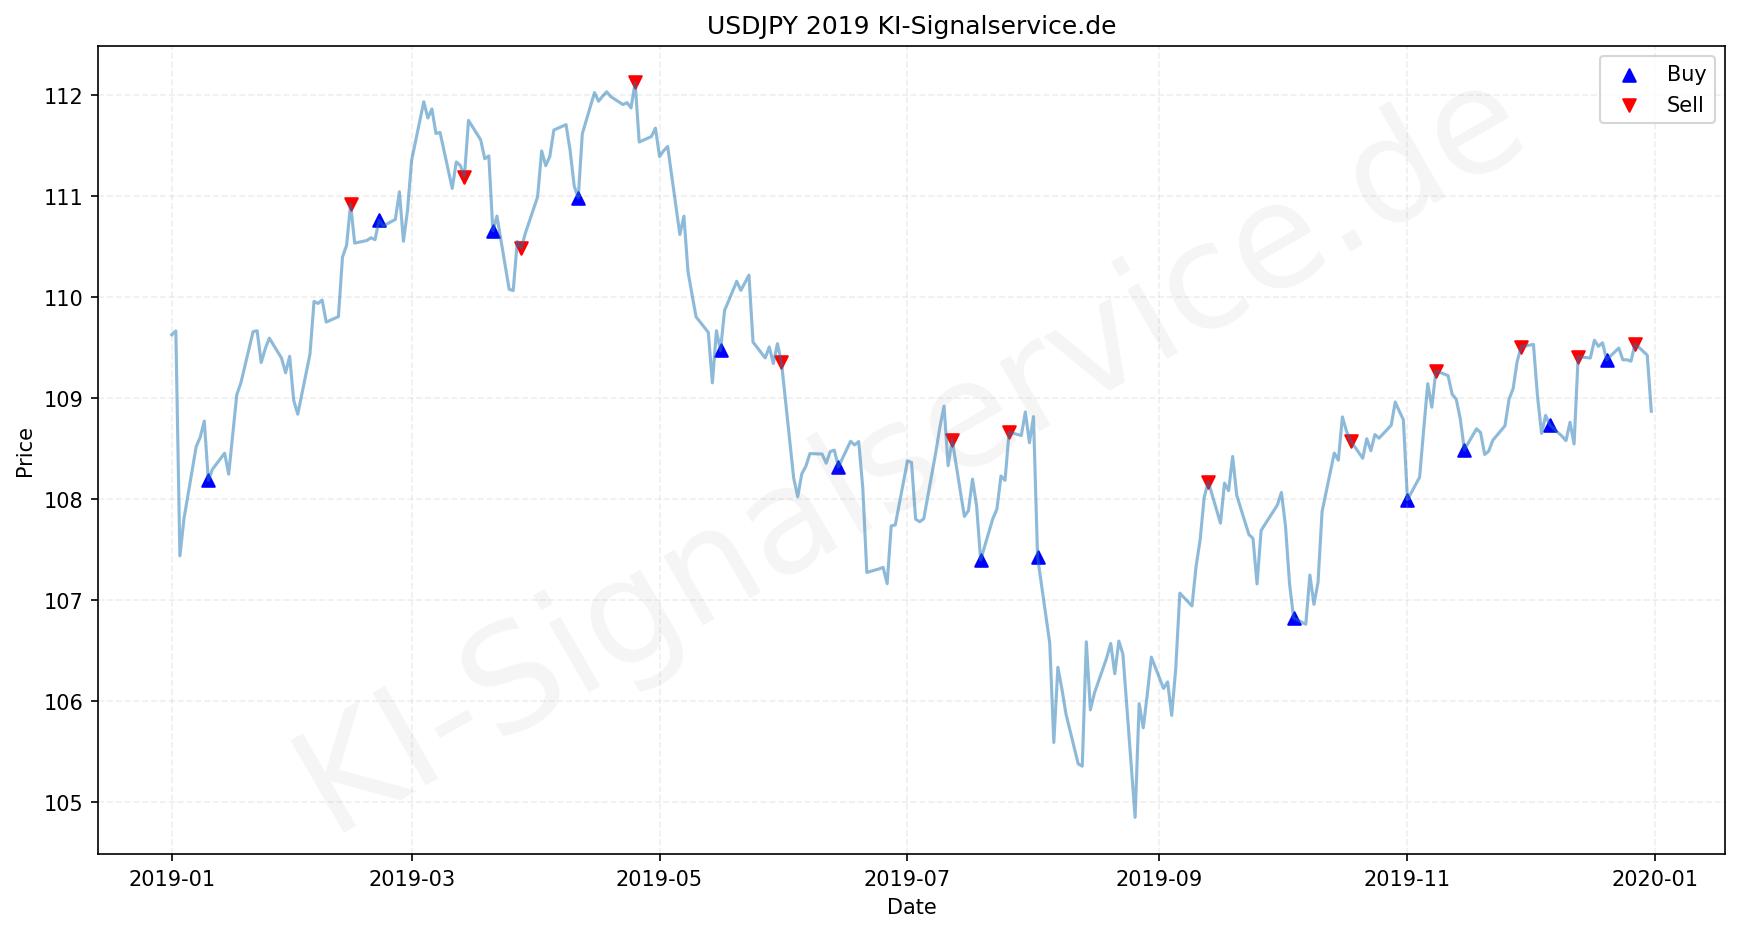 USDJPY Chart - KI Tradingsignale 2019